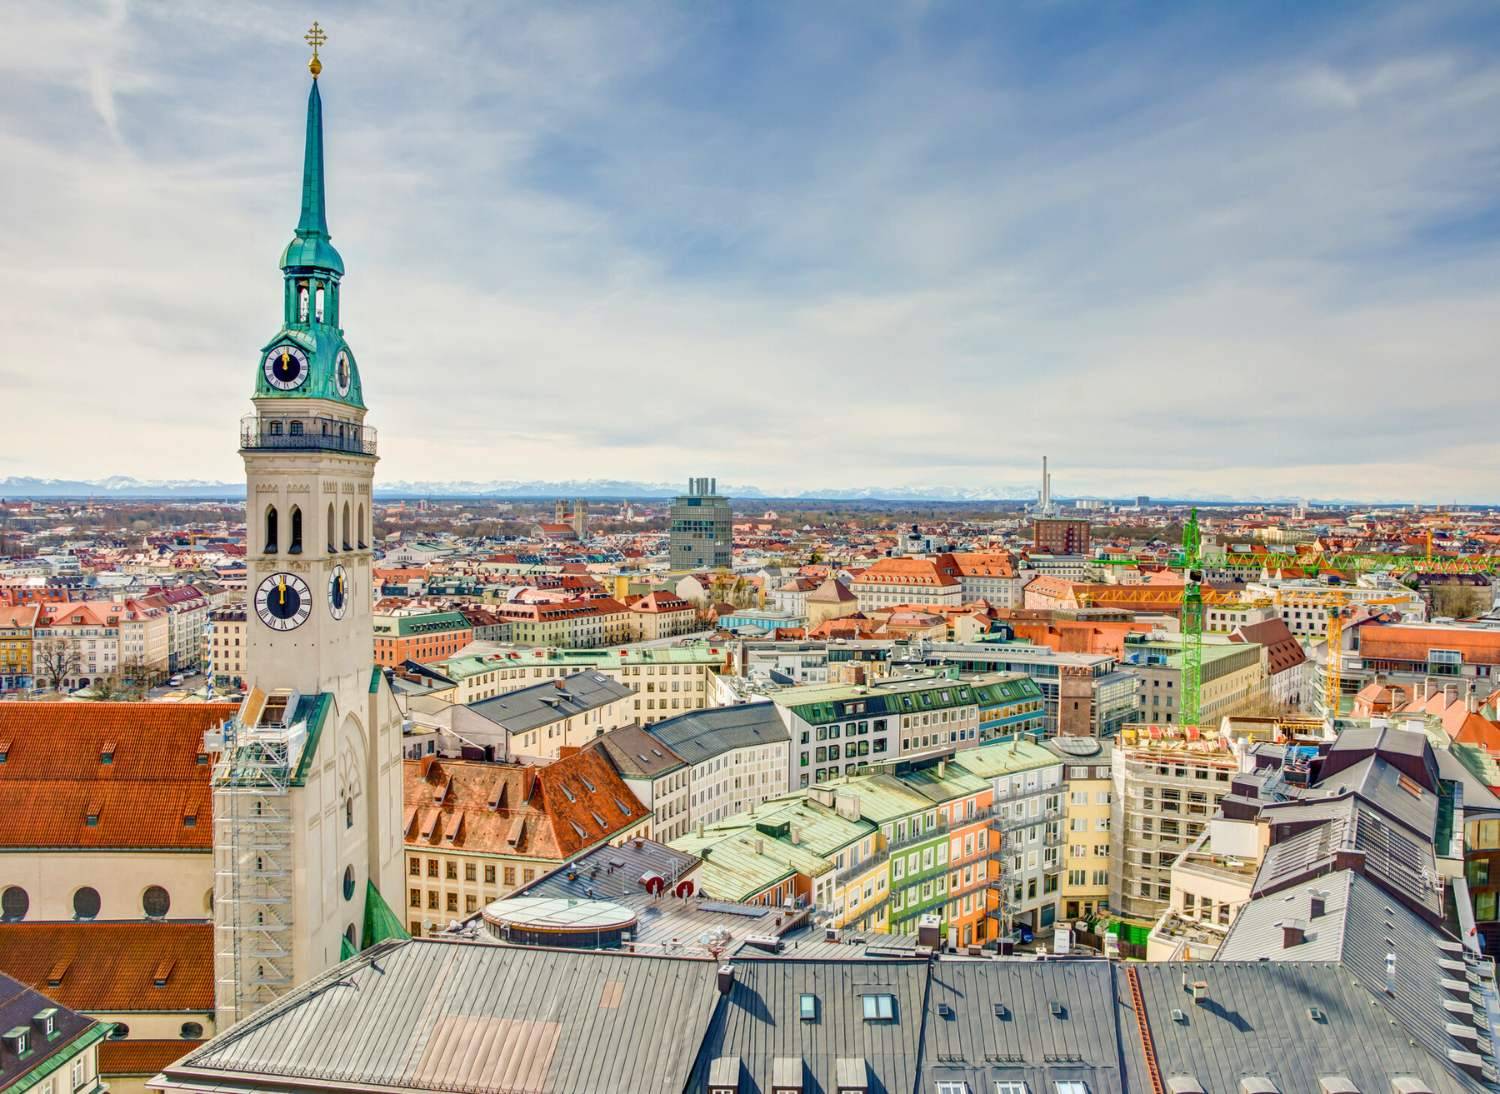 Eine Luftaufnahme der Stadt München mit St. Peter im Mittelpunkt